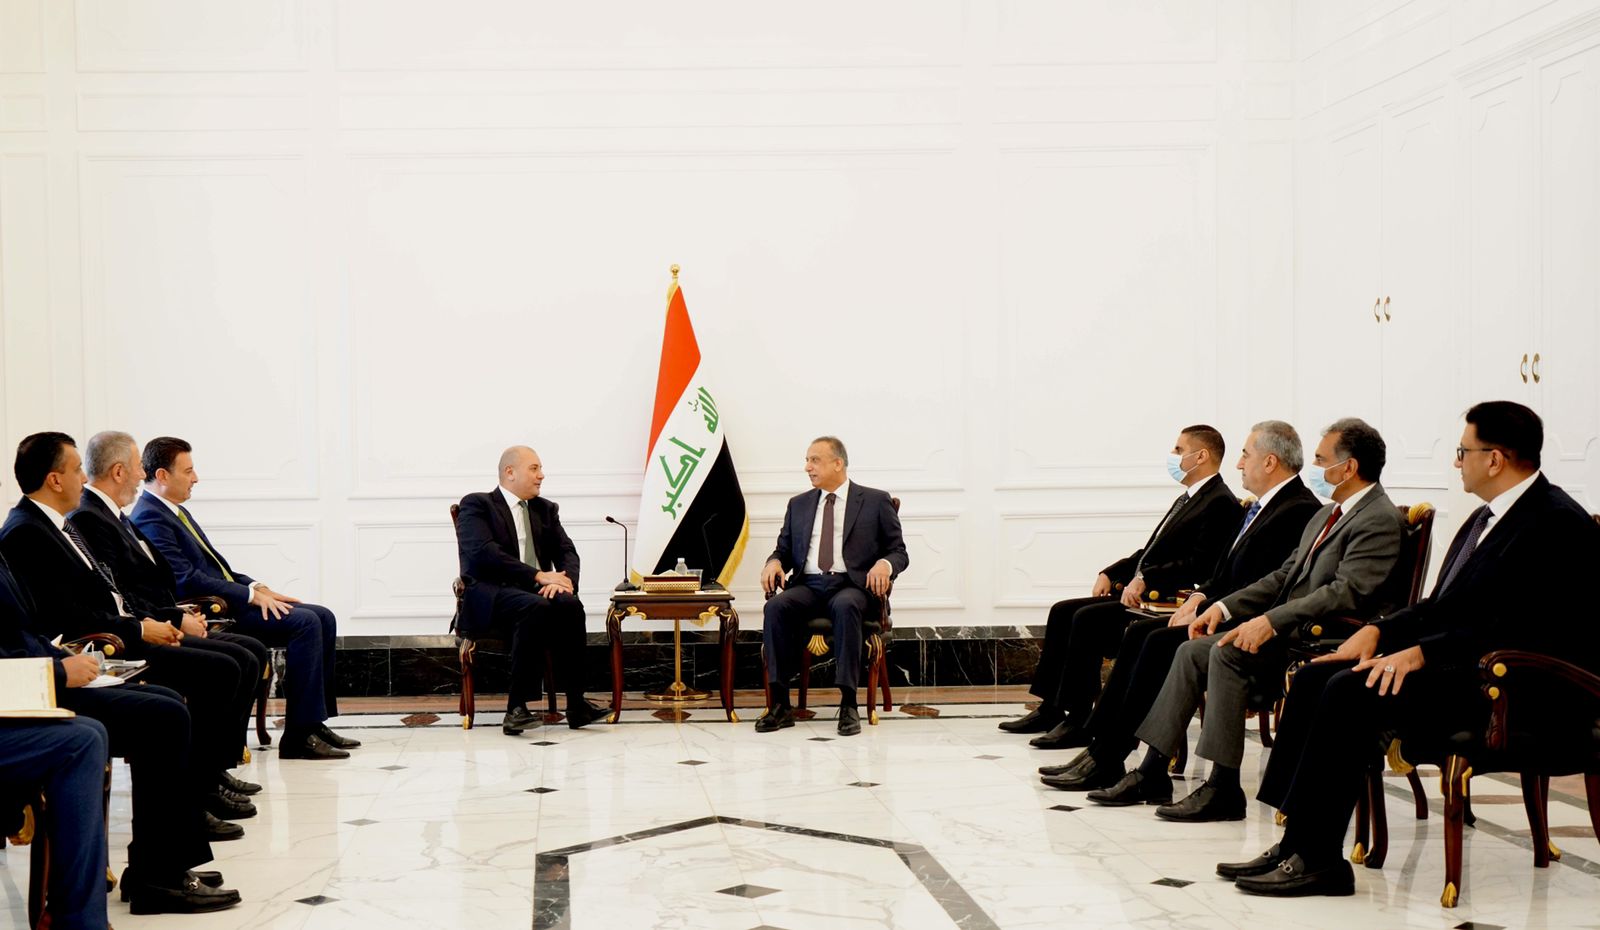 الكاظمي يحث البرلمانيين العراقيين والاردنيين على تسهيل "عملية التكامل" بين البلدين 